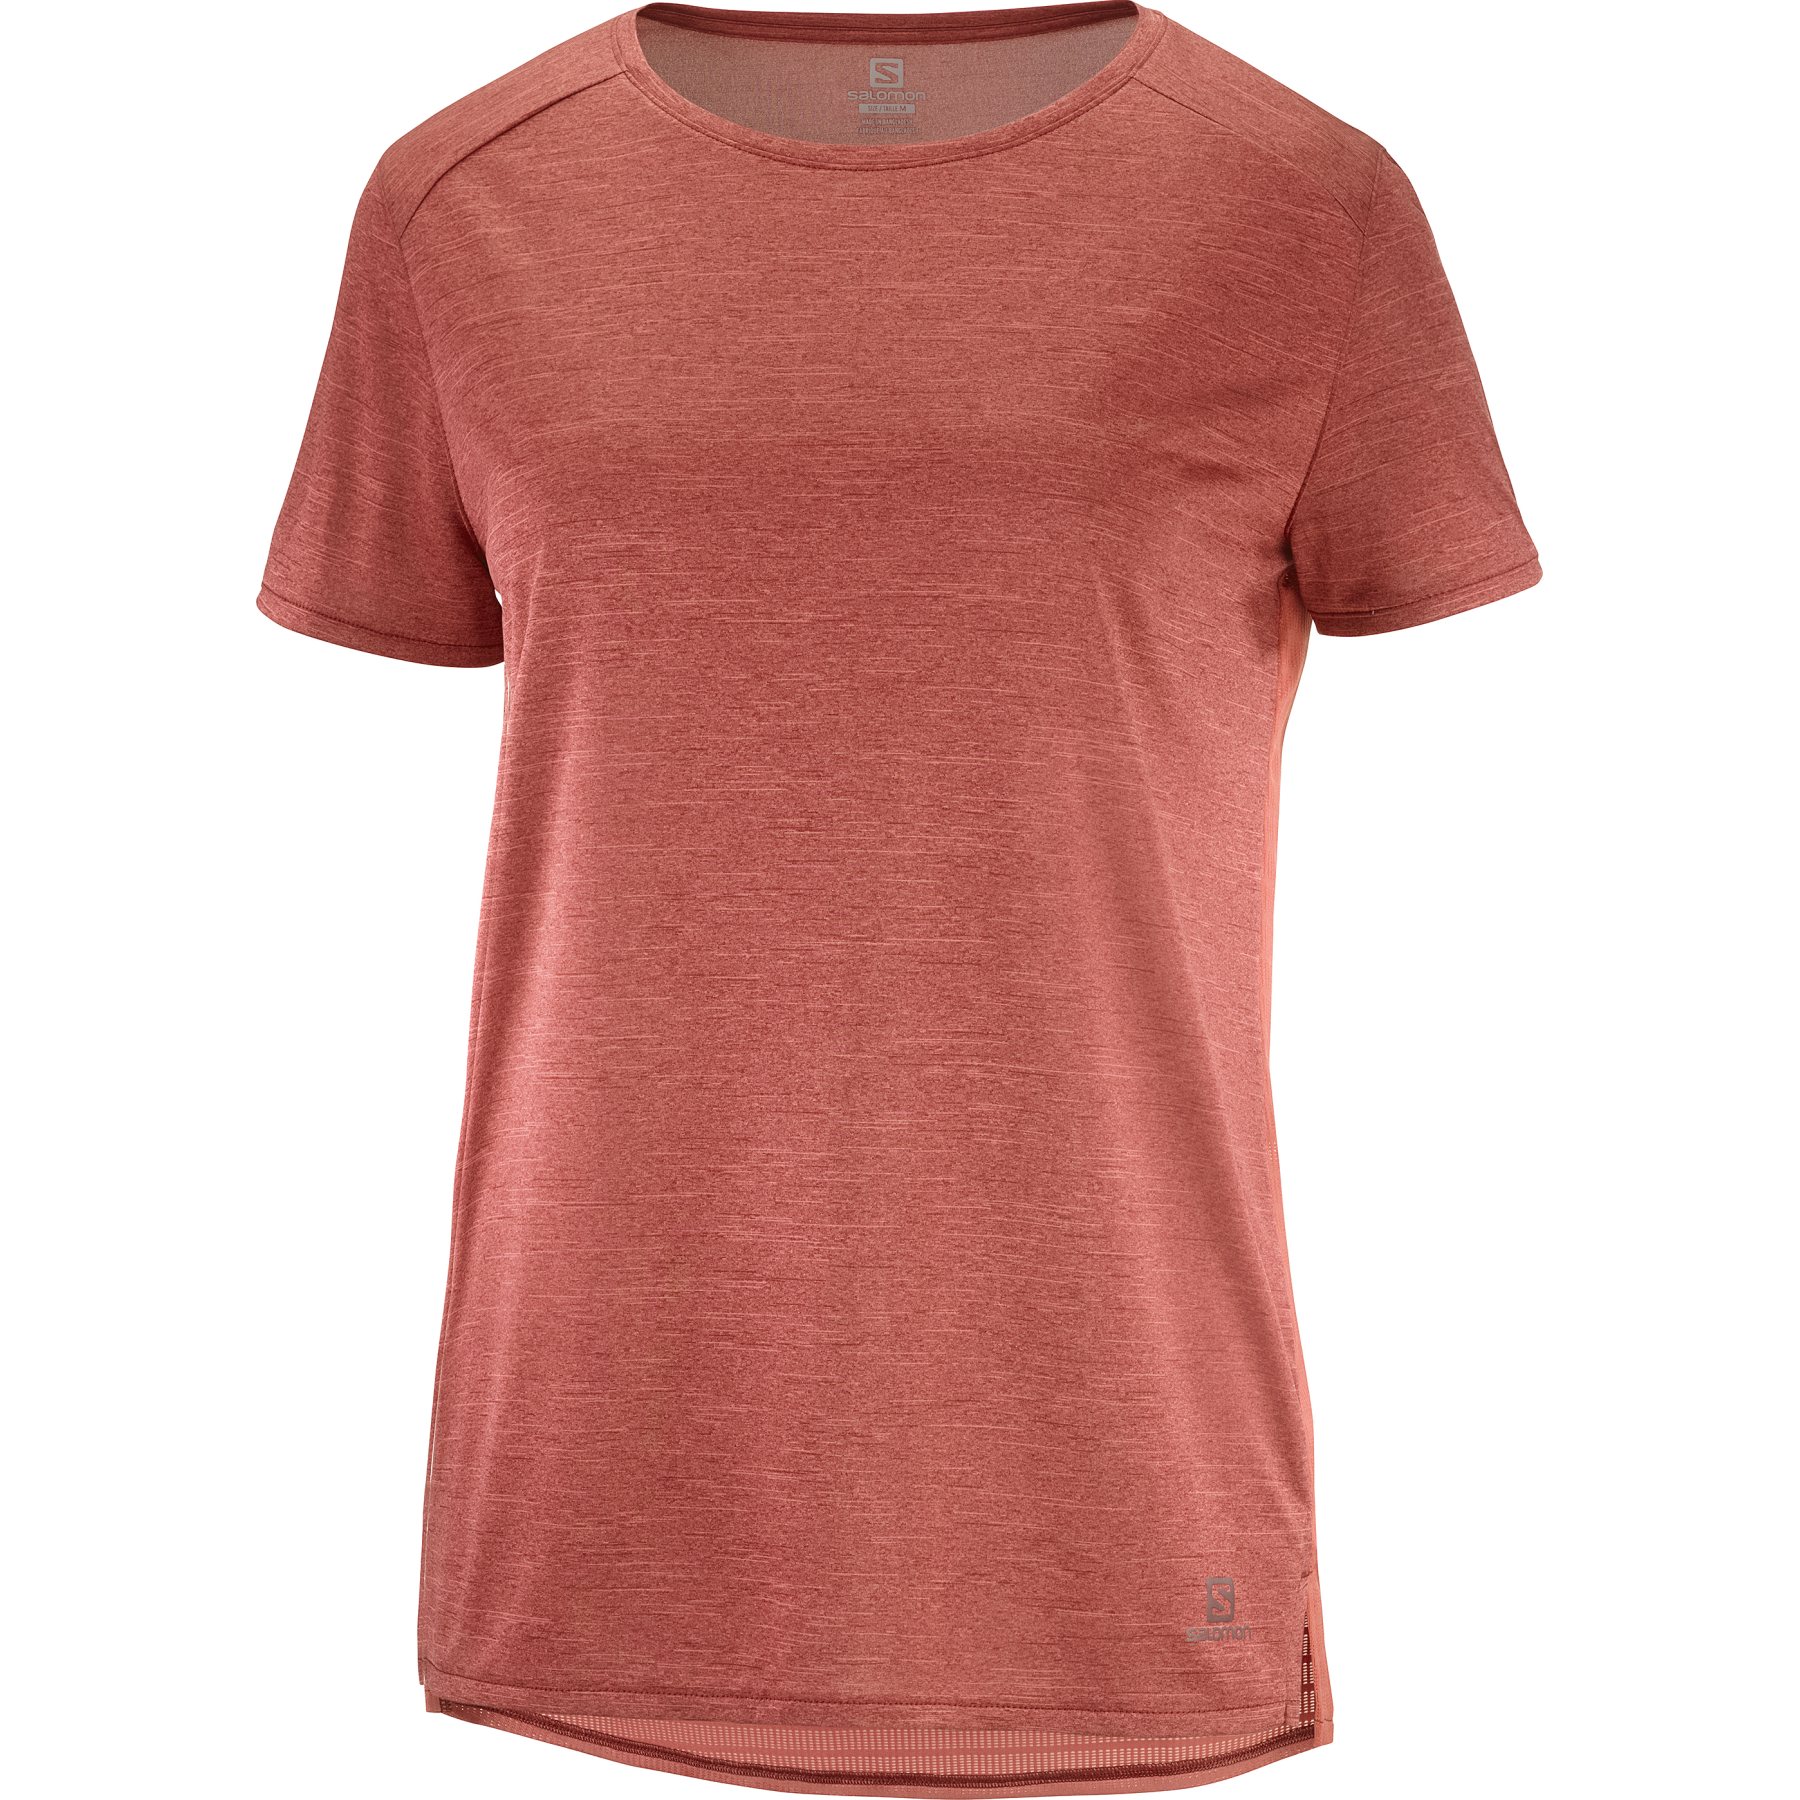 Bild von Salomon Outline Summer T-Shirt Damen - cabernet